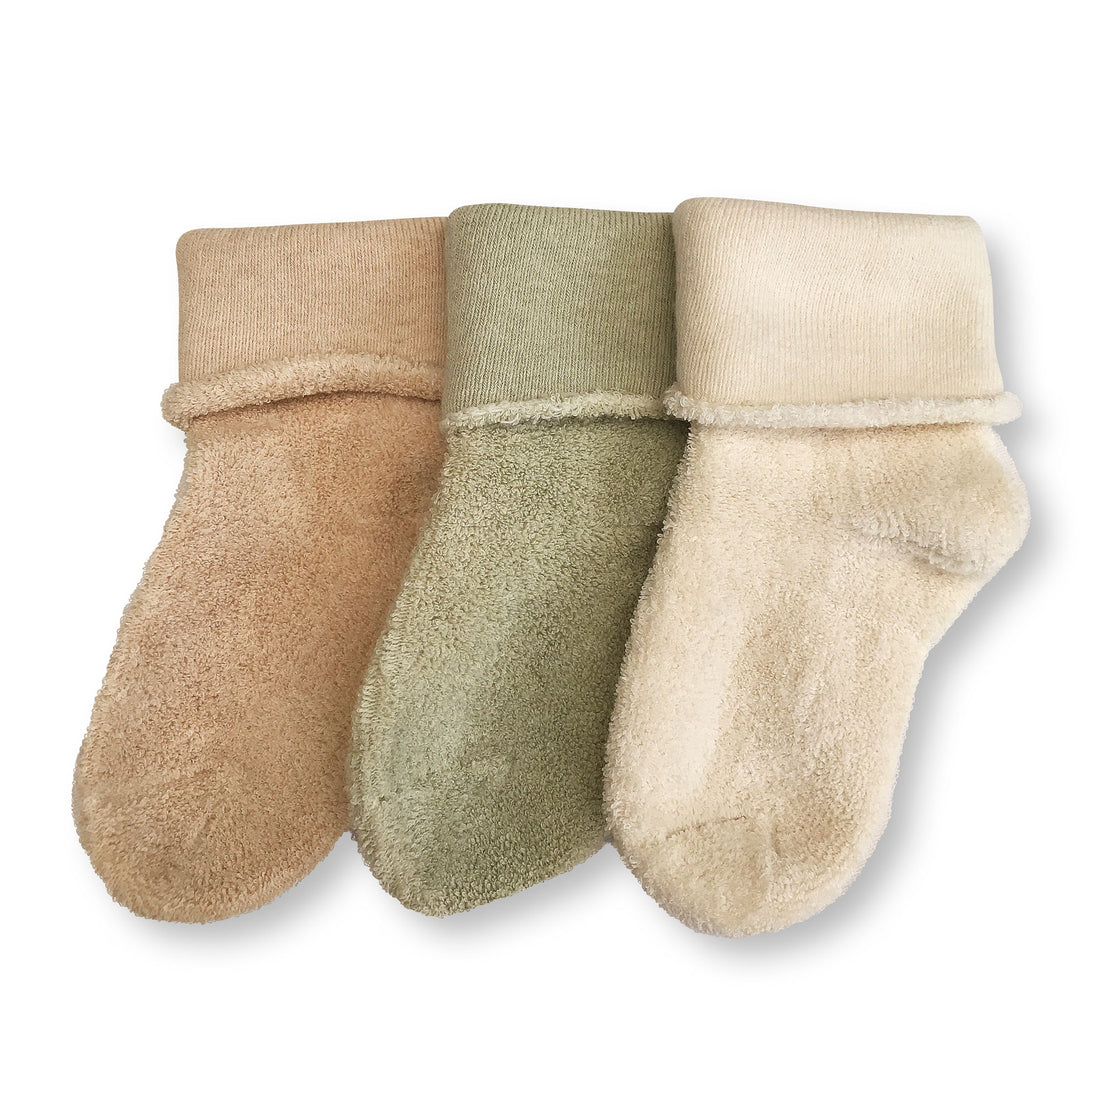 Baby Socks Plain - 3 Pack